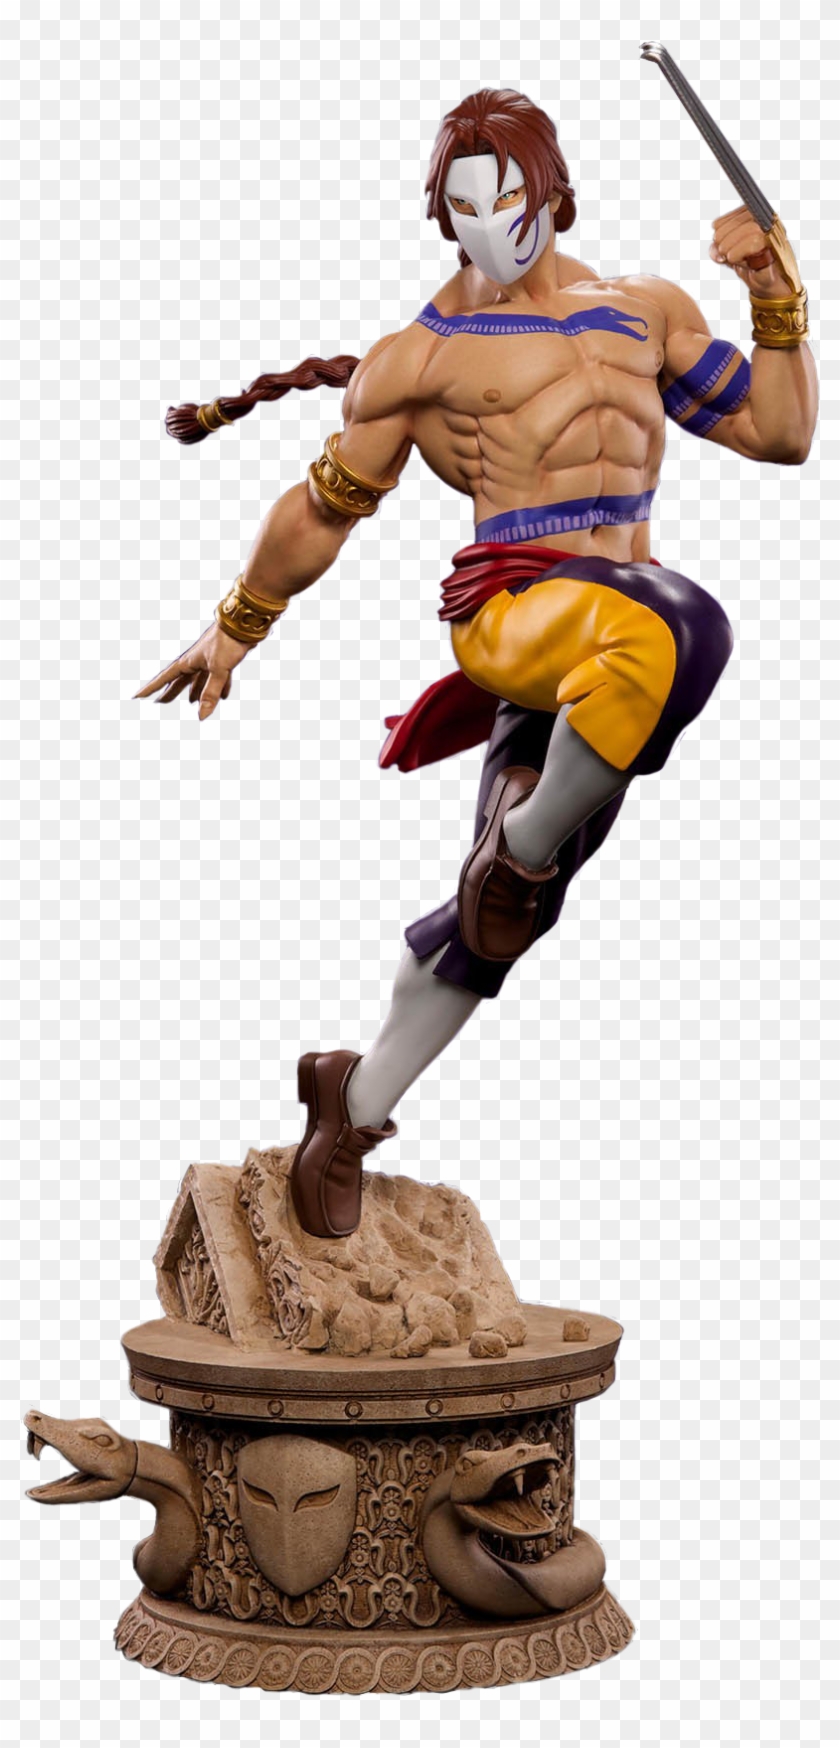 Vega 1/4 Scale Statue - Bonecos De Street Fighter Pop Clipart #4090898